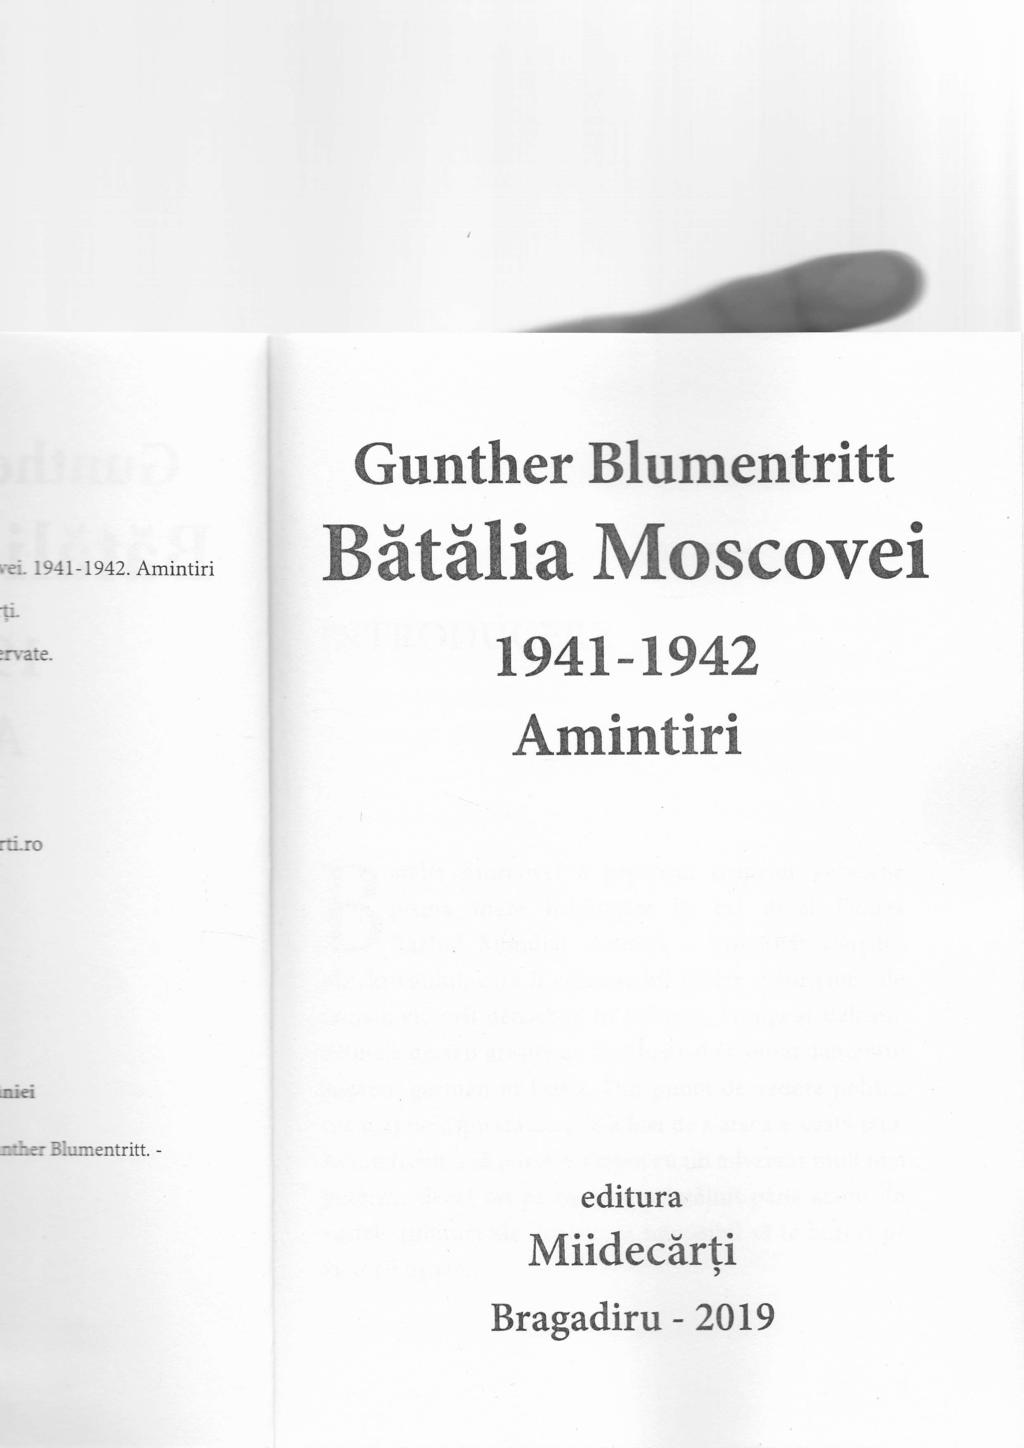 Gunther Blumentritt BeteHa Moscovei